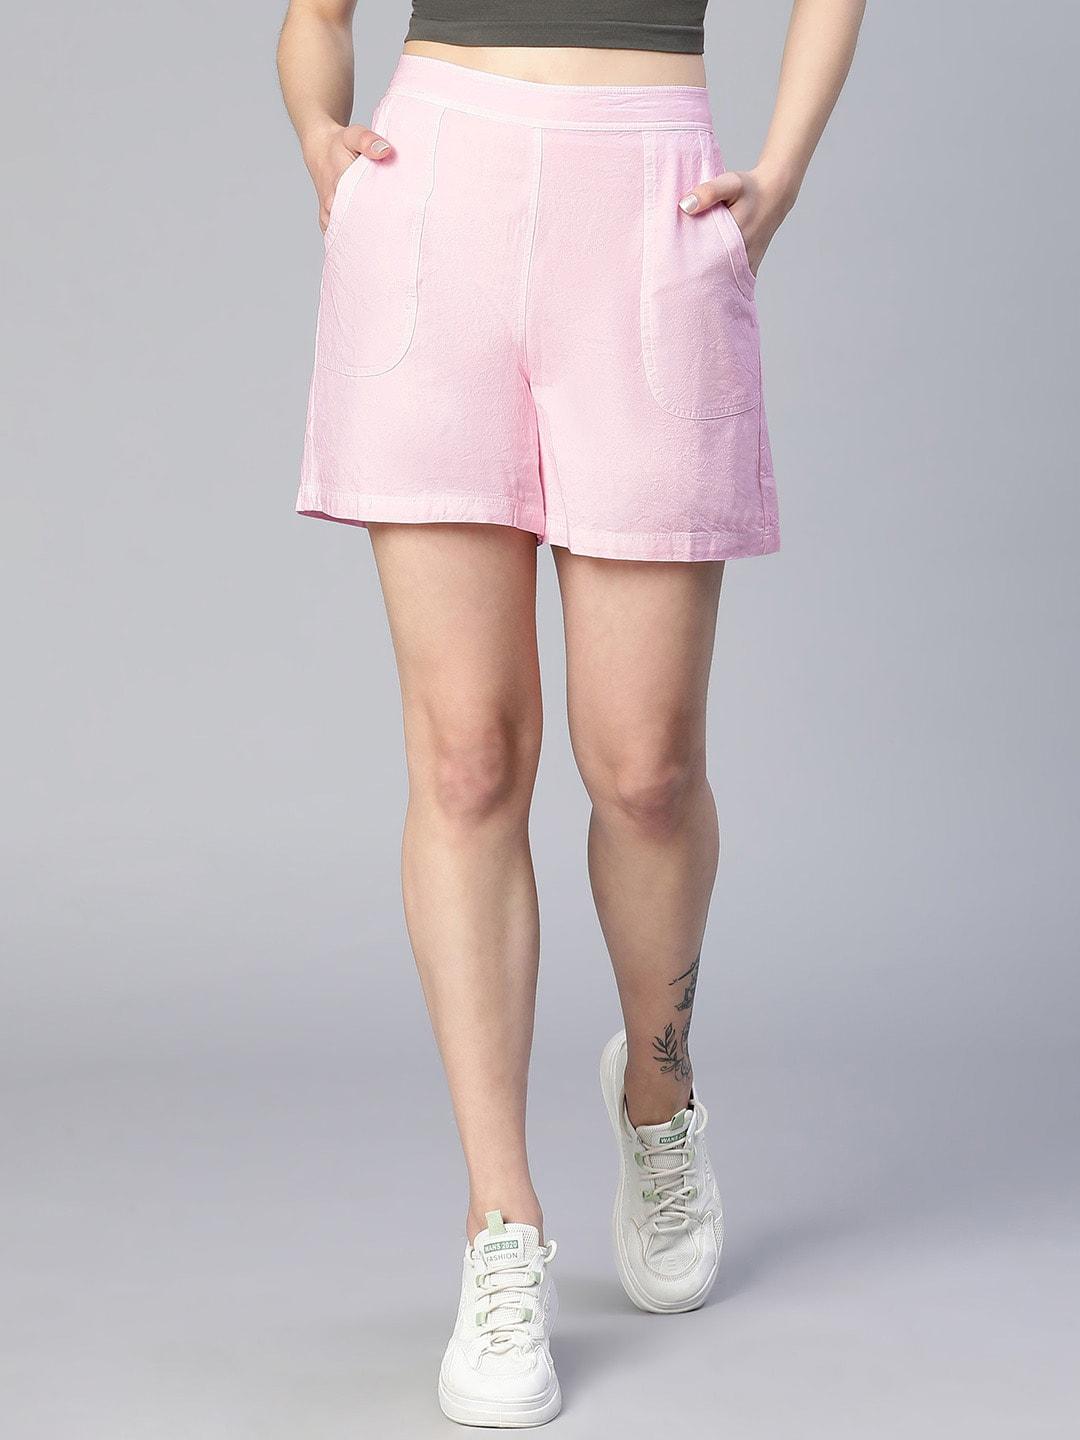 oxolloxo-women-washed-elasticated-cotton-shorts